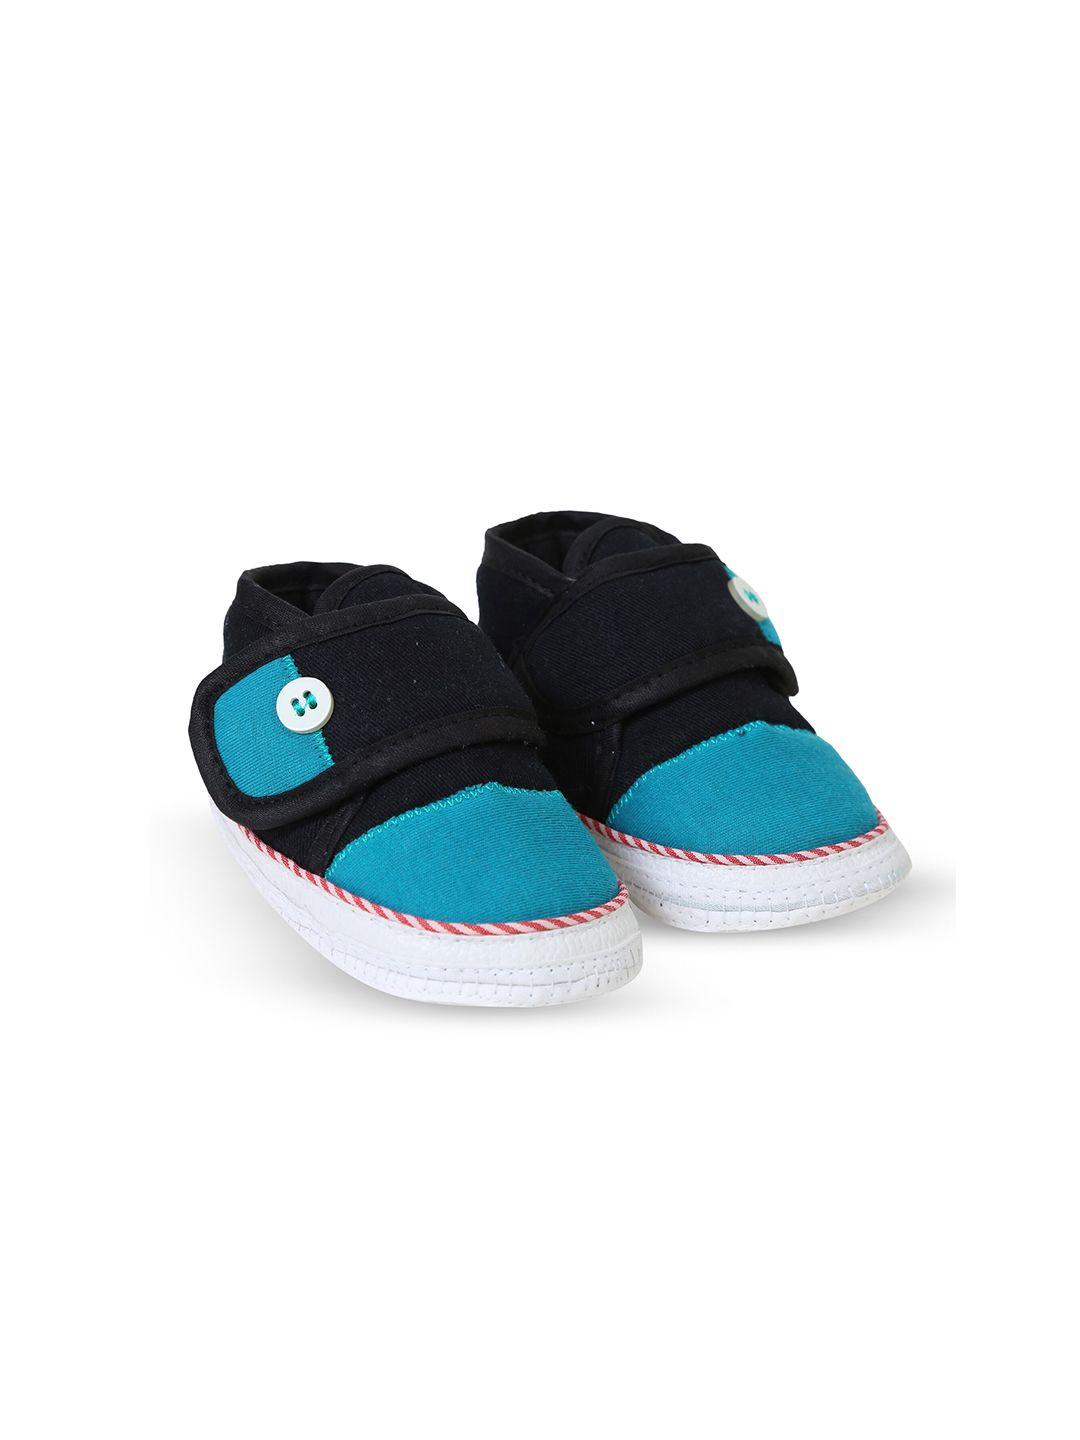 butterthief unisex infant kids blue & black comfort sandals